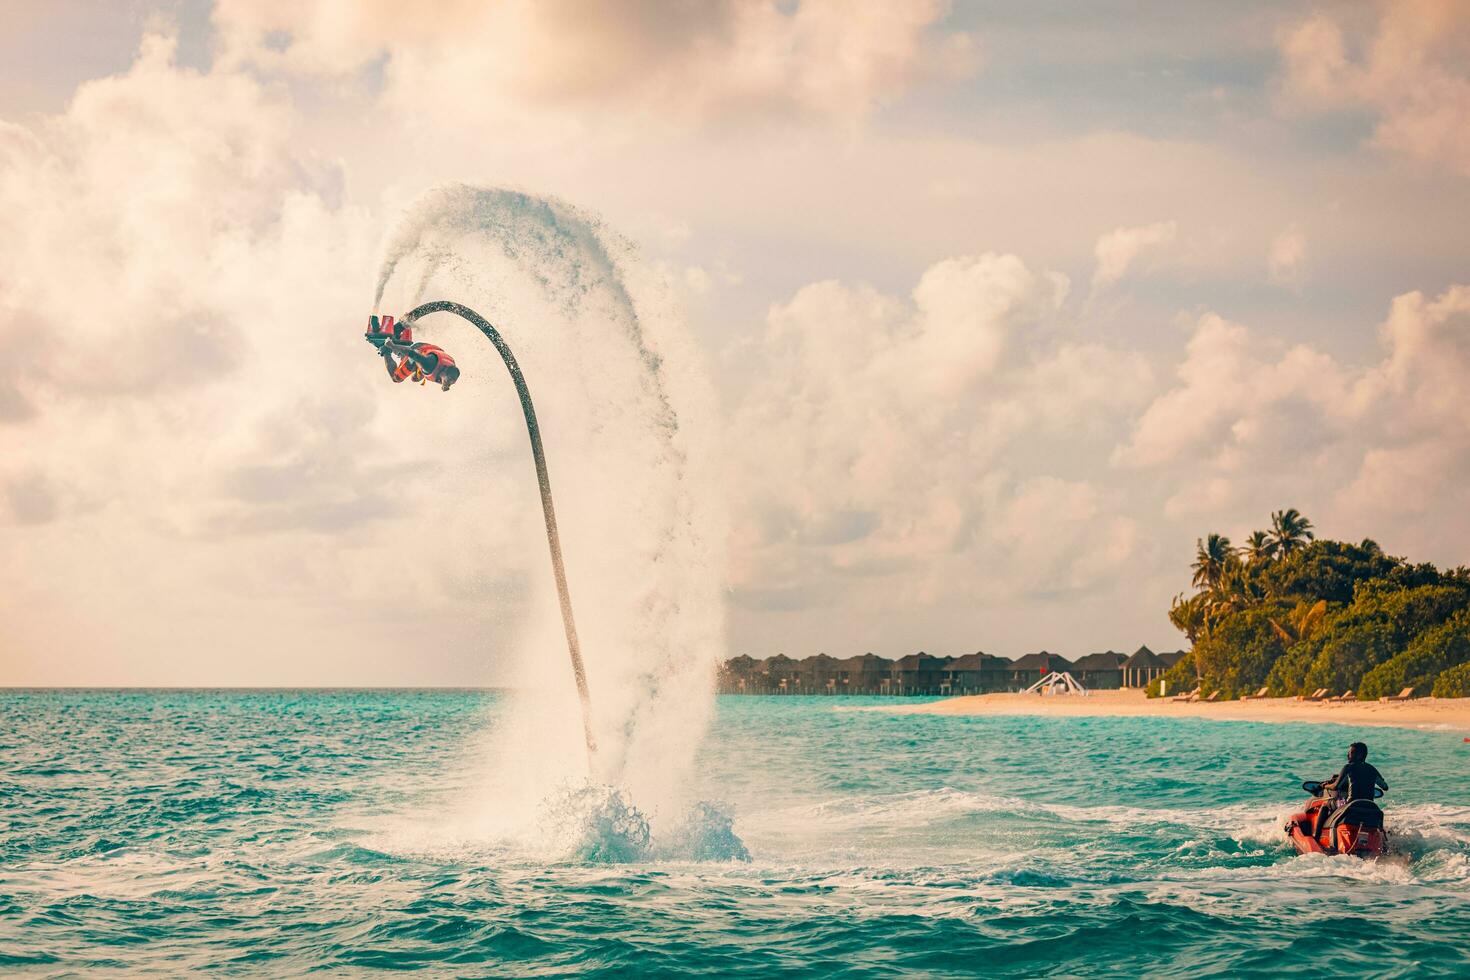 Maldiven eiland zonsondergang. professioneel vlieg bord rijder aan het doen terug omdraaien met tropisch toevlucht eiland achtergrond. zonsondergang sport en zomer werkzaamheid achtergrond, pret water sport 08.17.21 - middag atol foto